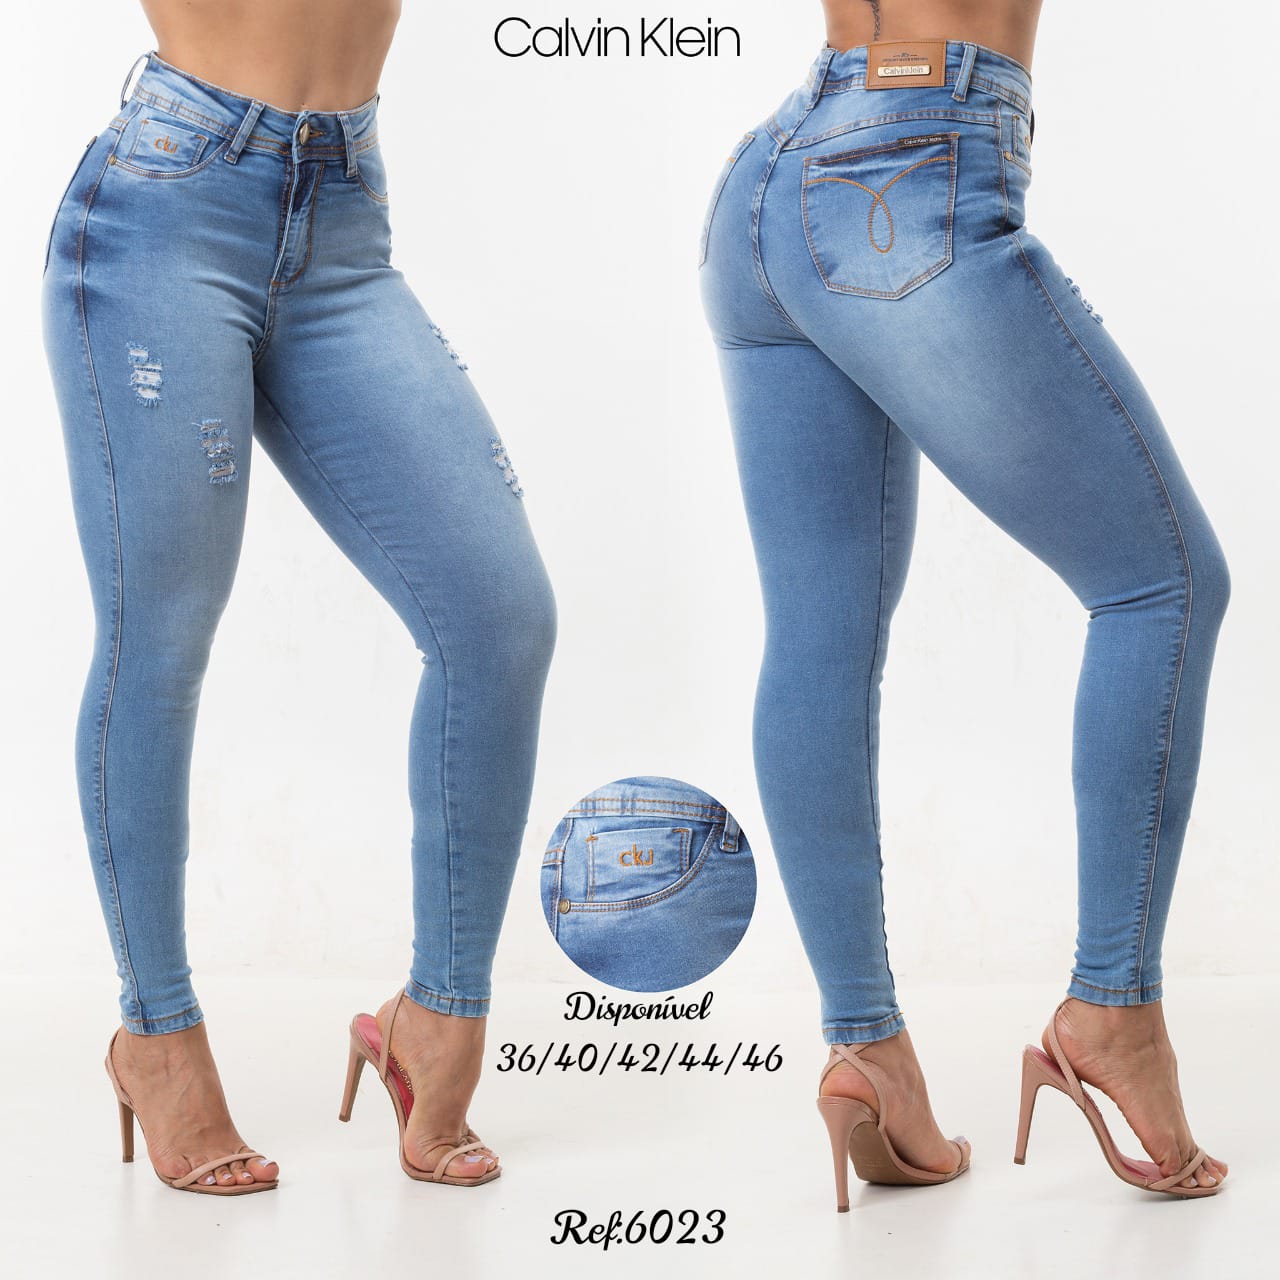 Produtos da categoria Calças jeans femininas à venda no Acapulco